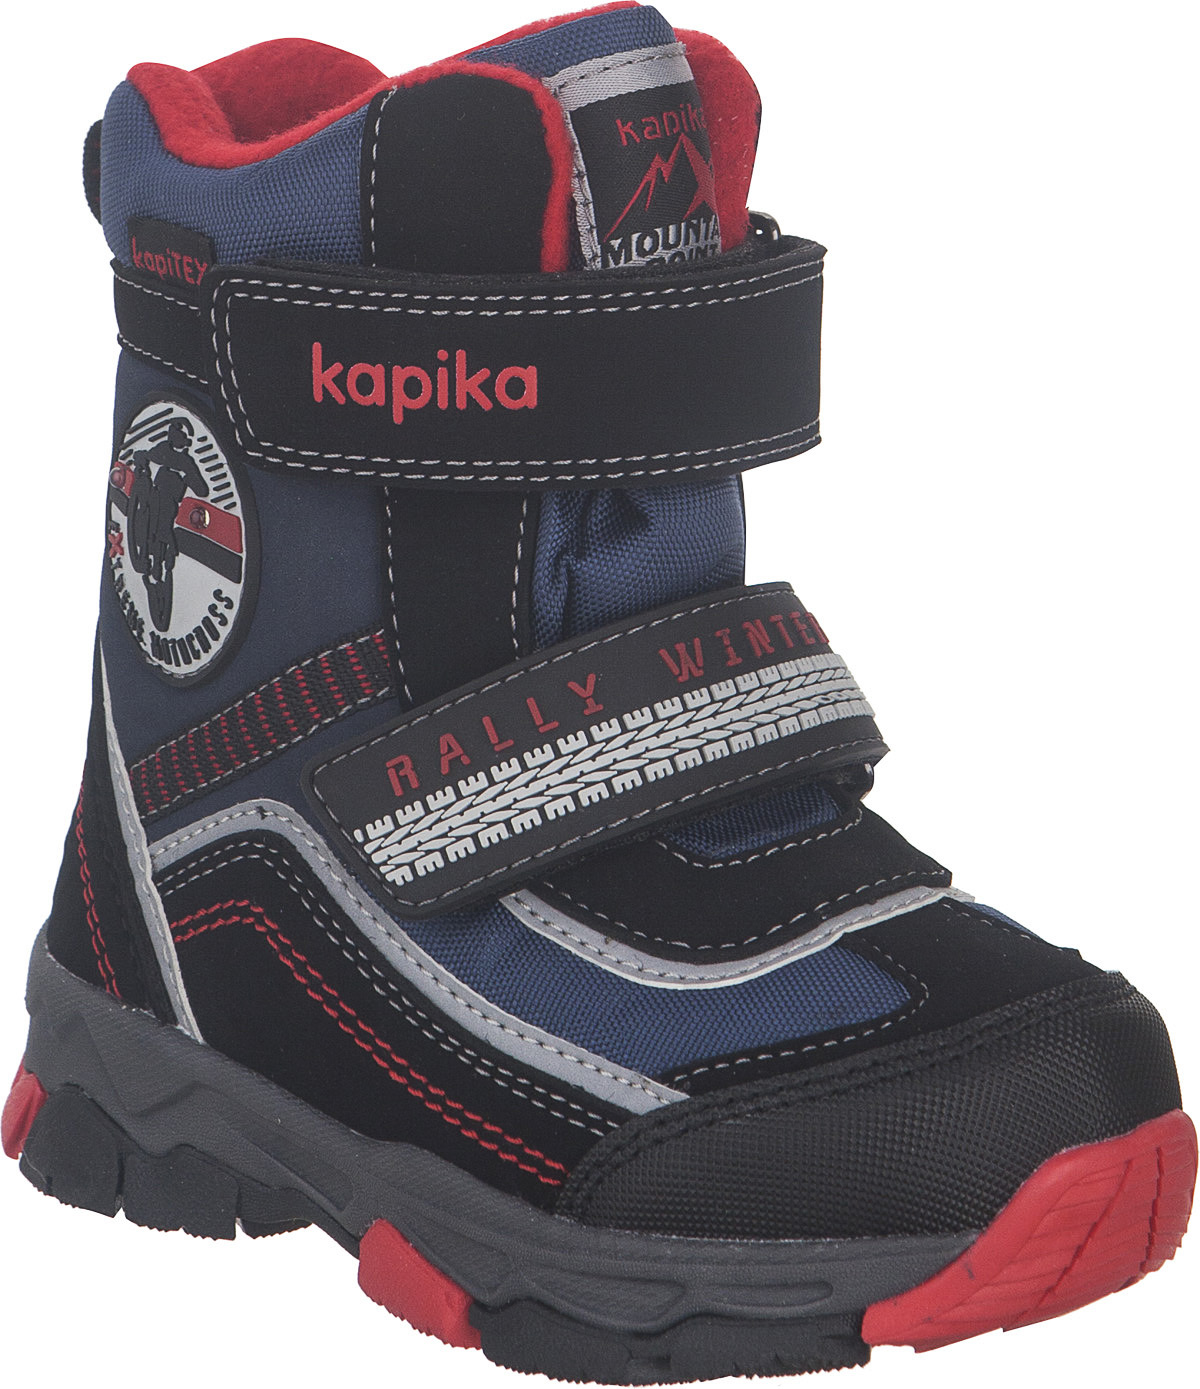 Ботинки для мальчика Kapika KapiTEX, цвет: черный, синий, красный. 41230-2. Размер 24